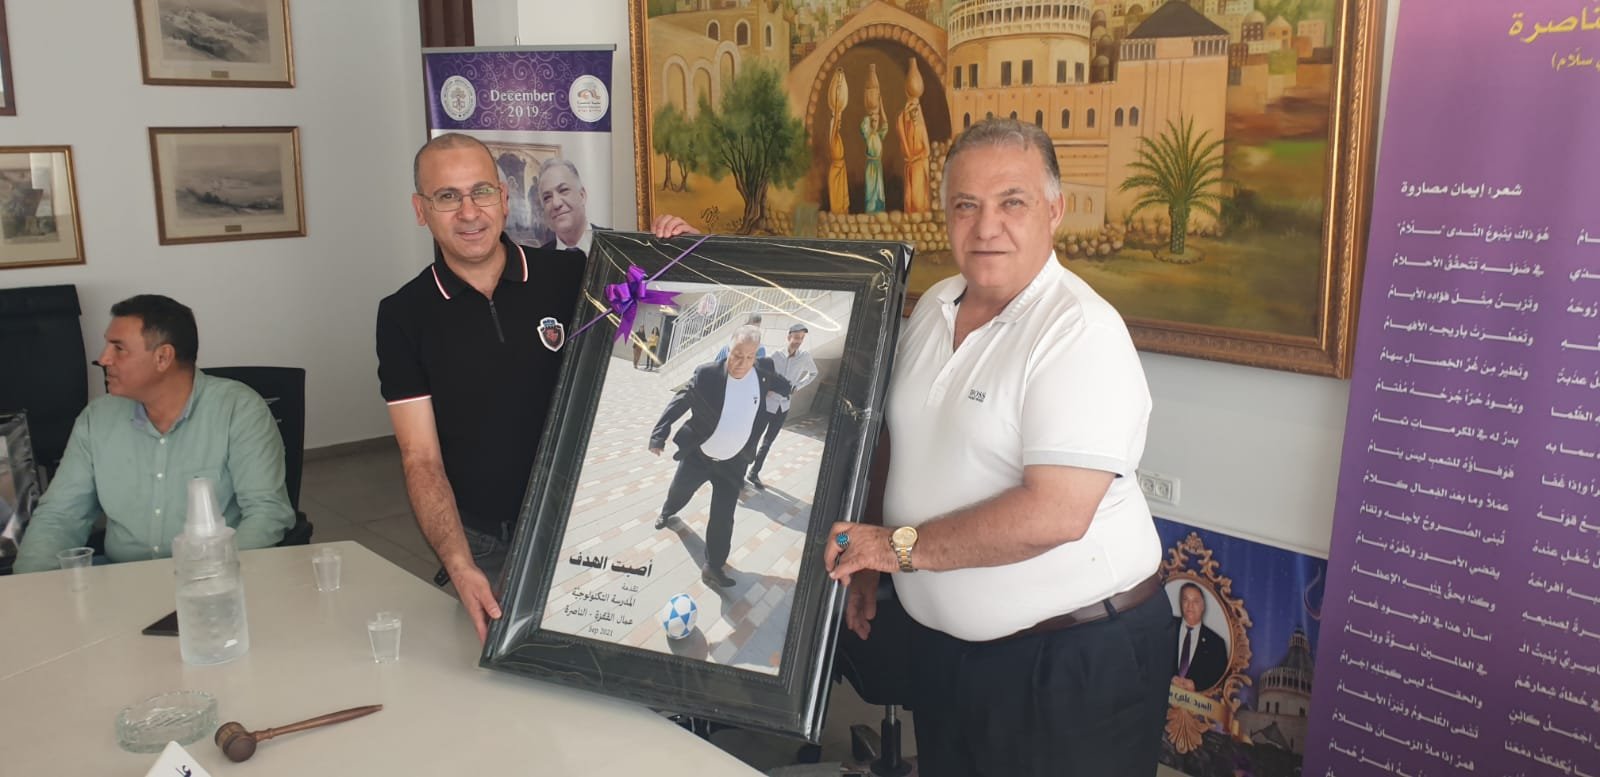 الناصرة: معلمو "عمال" ومديرها يلتقون رئيس البلدية علي سلاّم-4